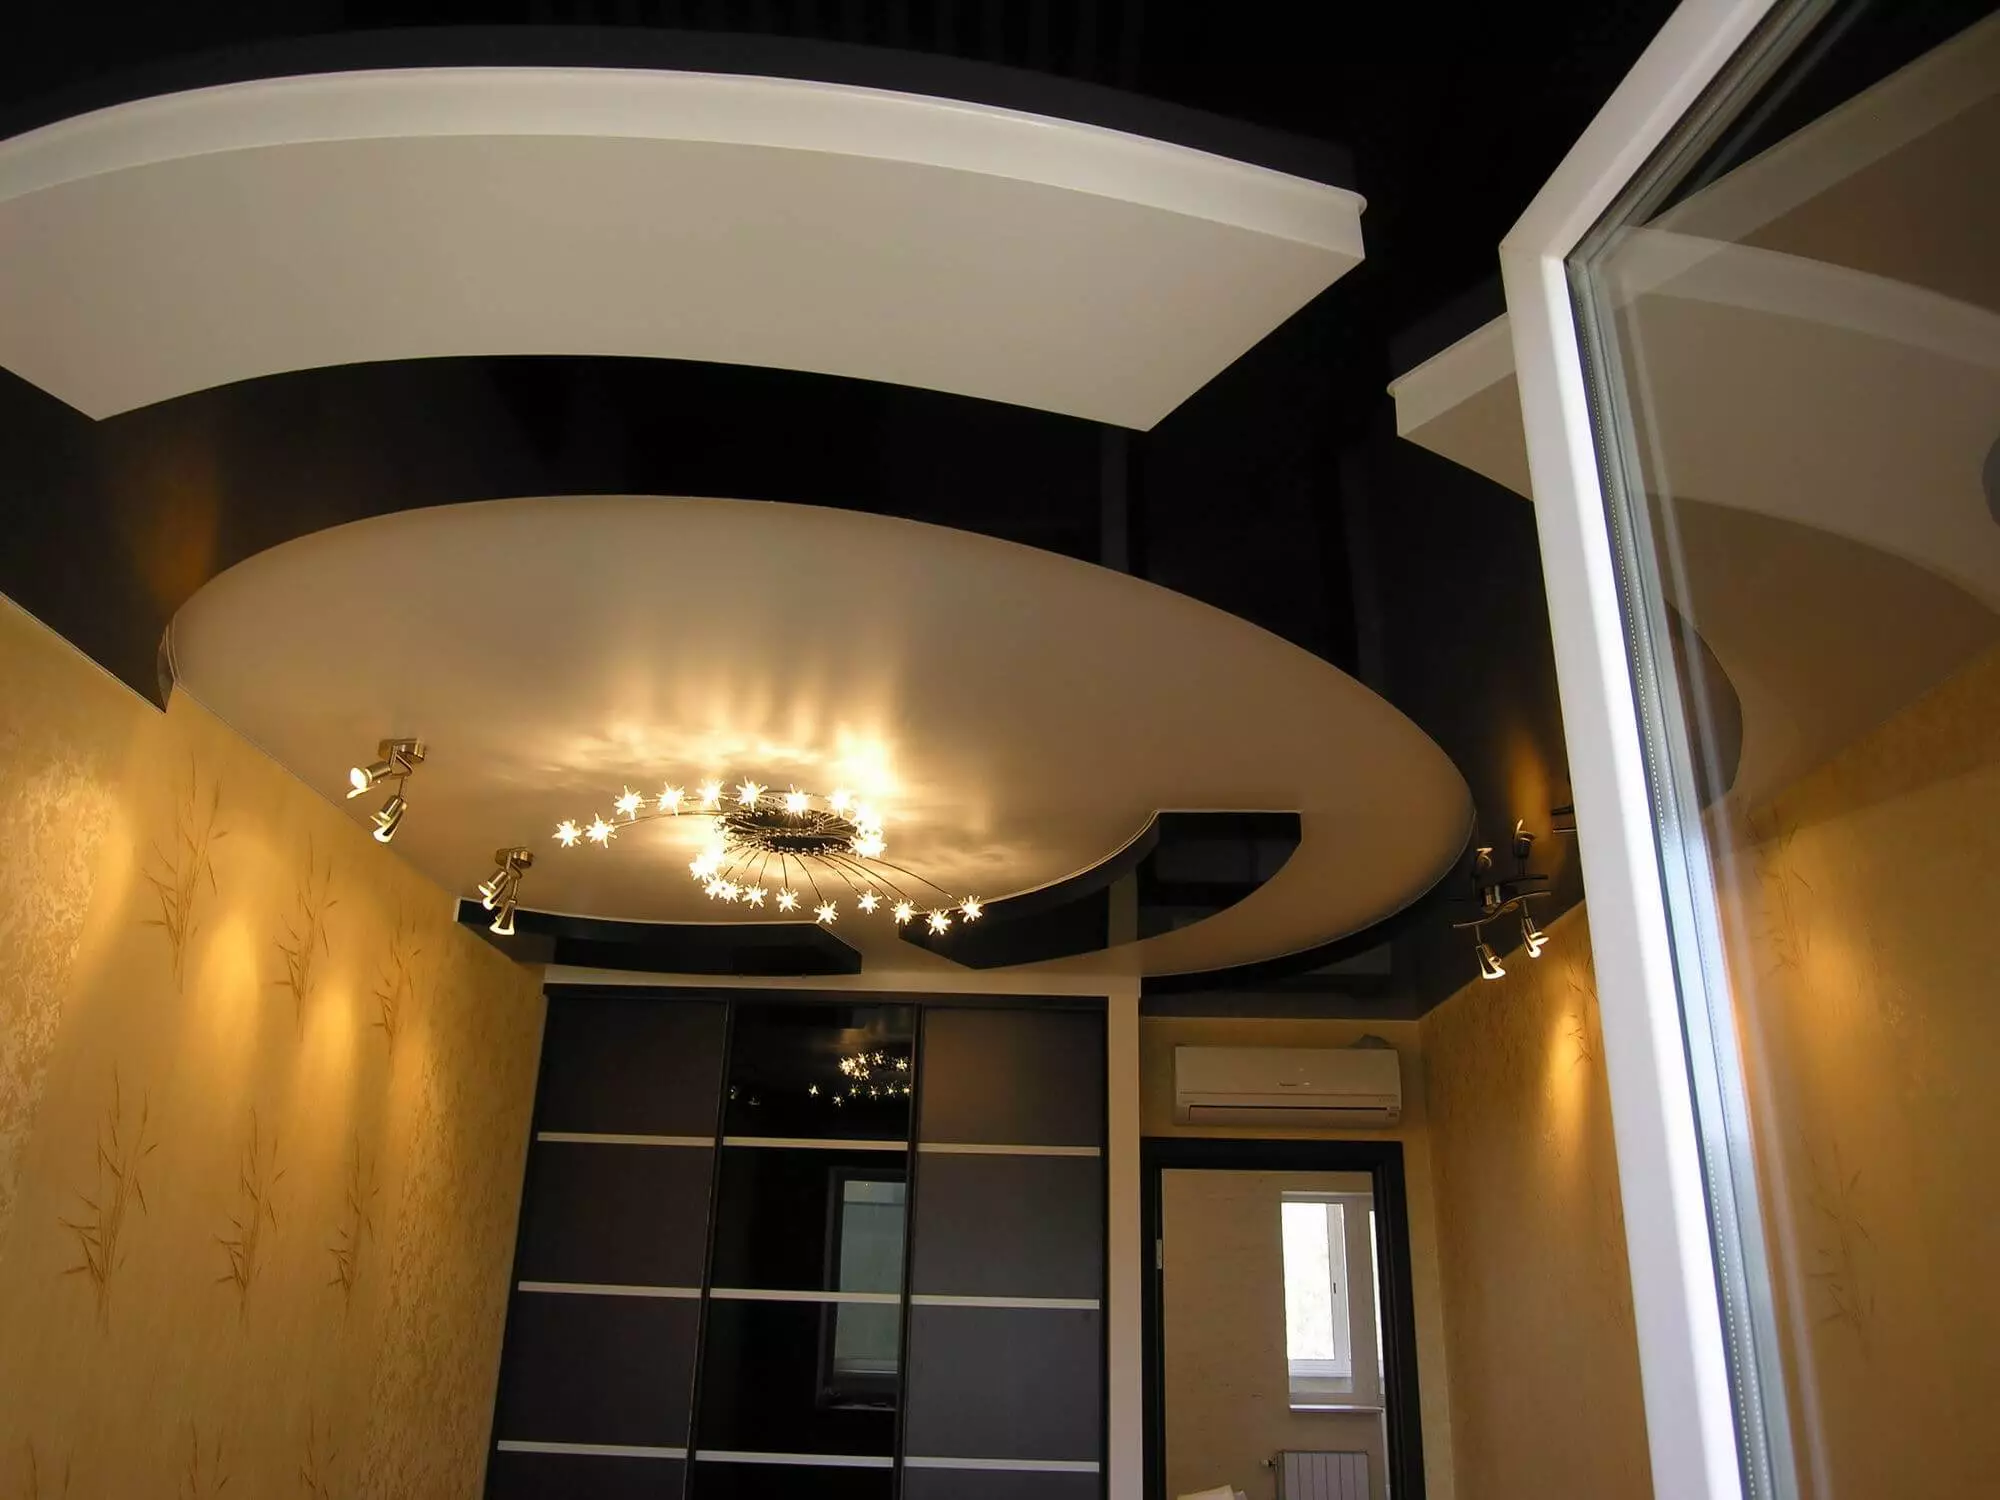 תקרה מתיחה במסדרון (71 תמונות): עיצוב תקרה במסדרון צרים וארוך, אופציות עם אורות נקודה ועיצובים של שתי ברמות בדירה, מינים שחורים ומבריקים 9270_61